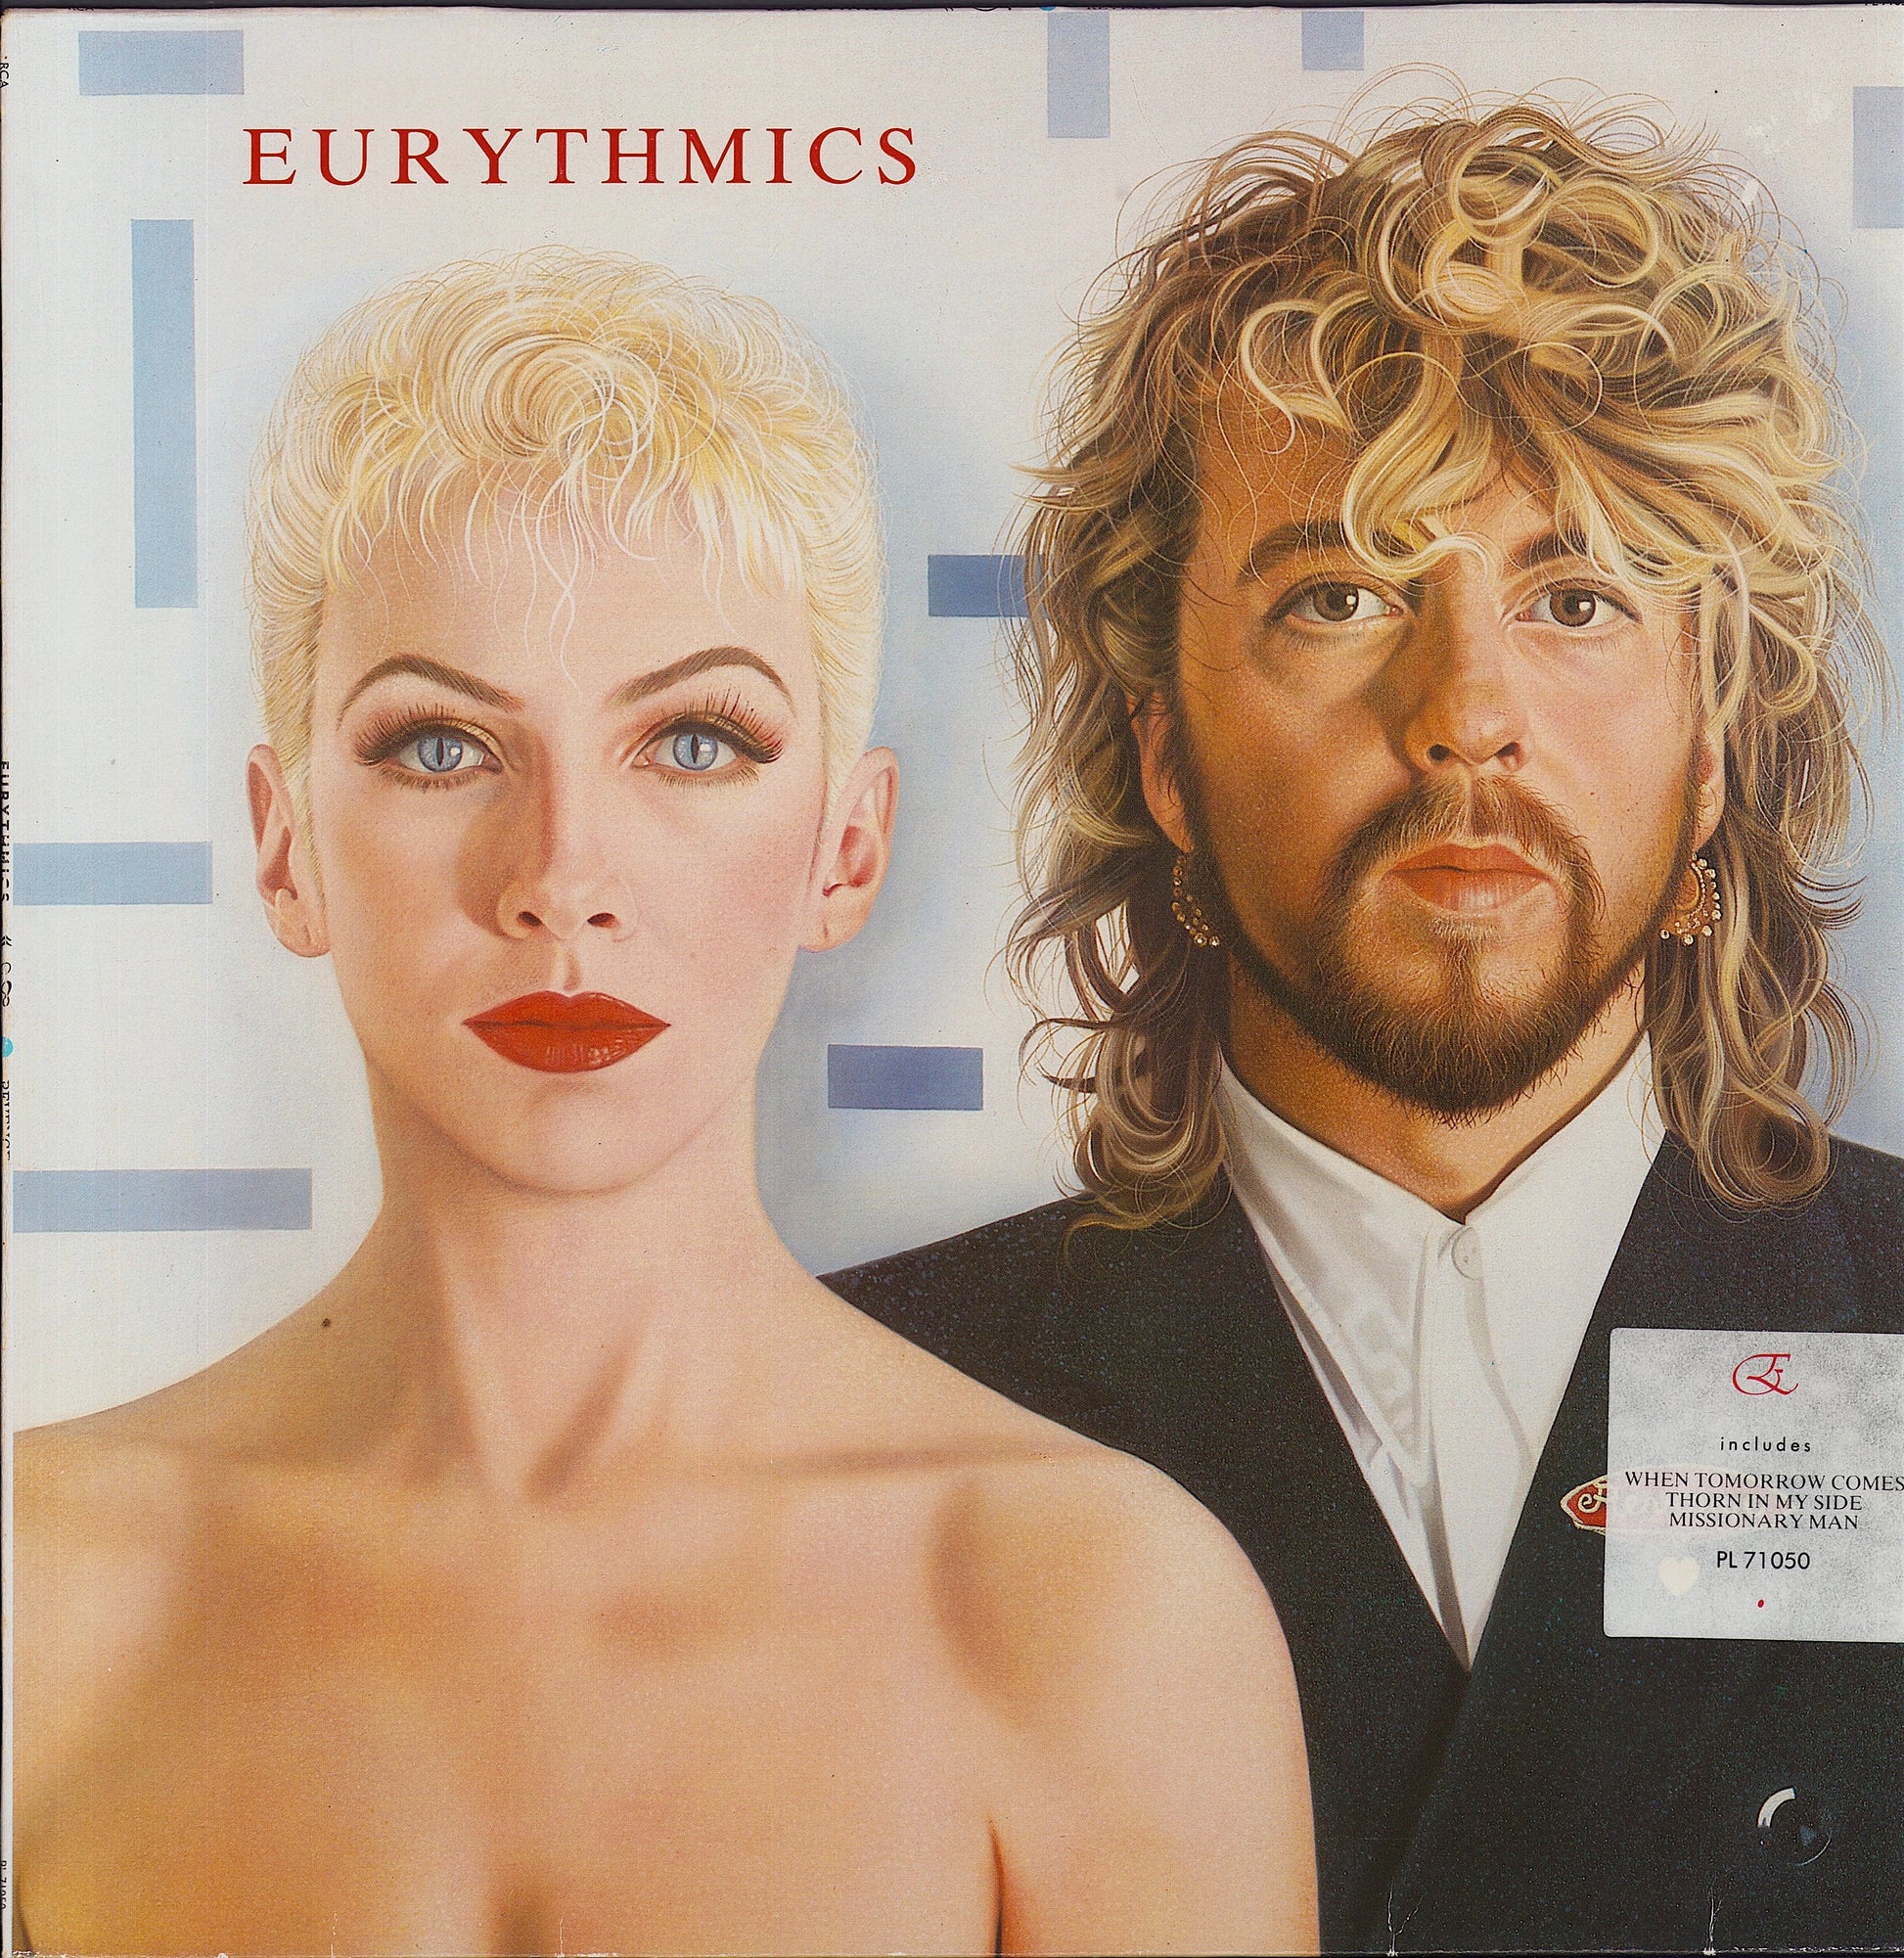 Eurythmics ‎- Revenge Vinyl LP